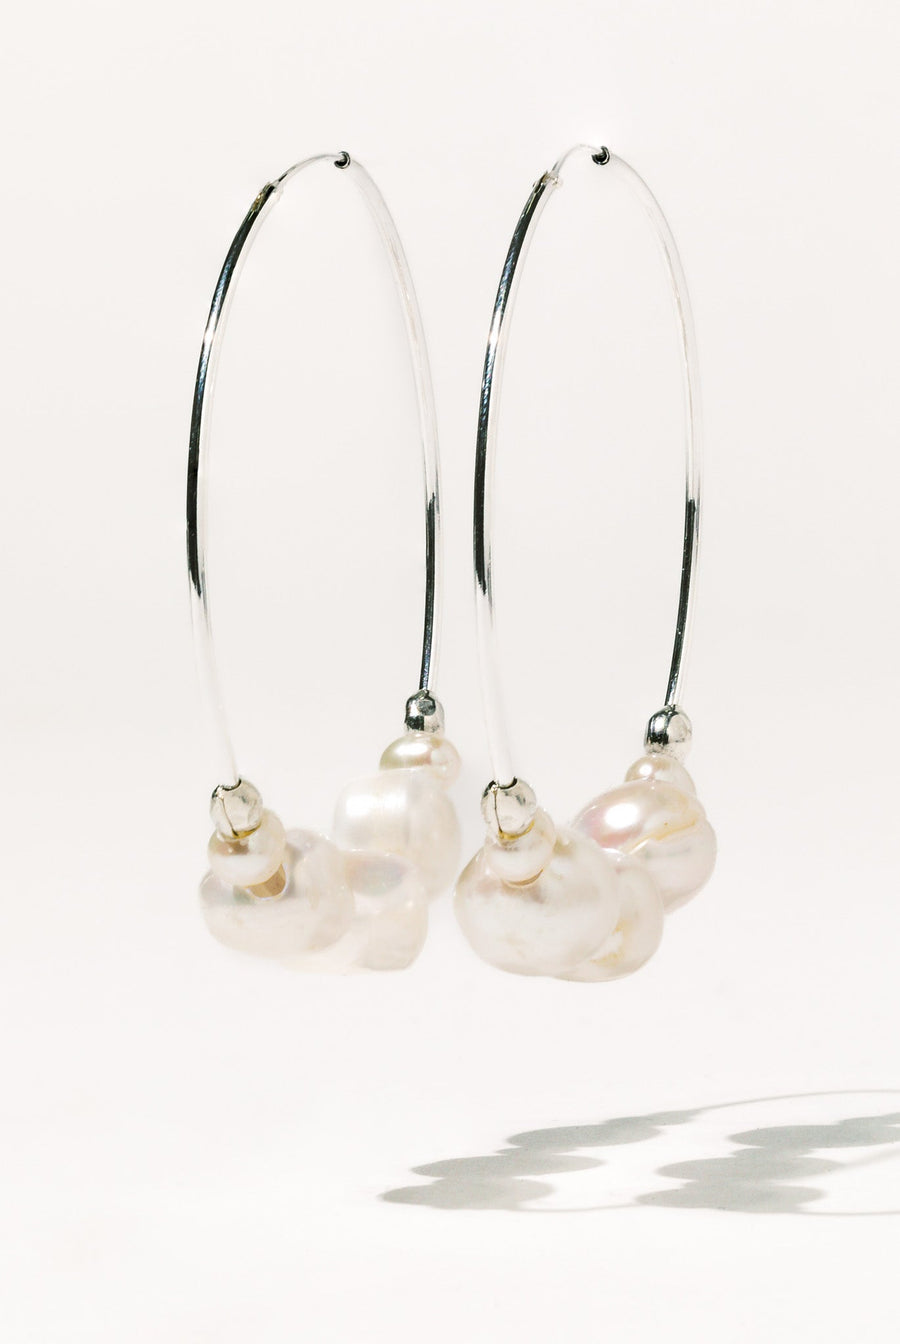 CGM Jewelry Silver Tefnut Pearl Earrings .:. Silver